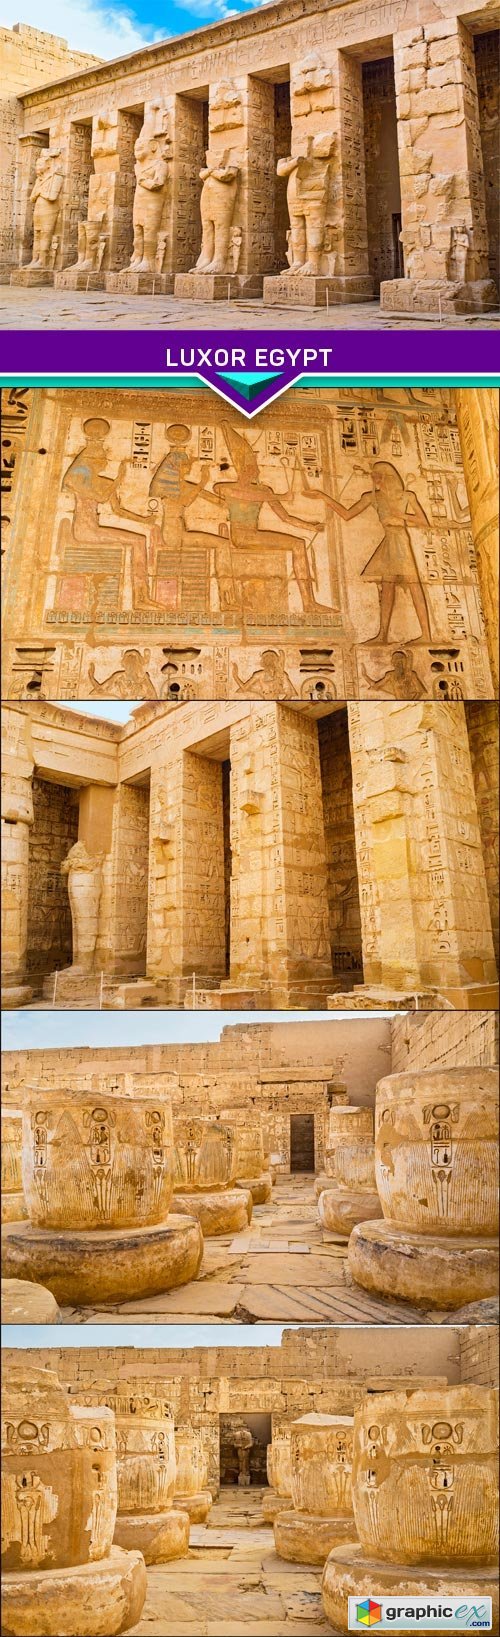 Luxor Egypt 5x JPEG